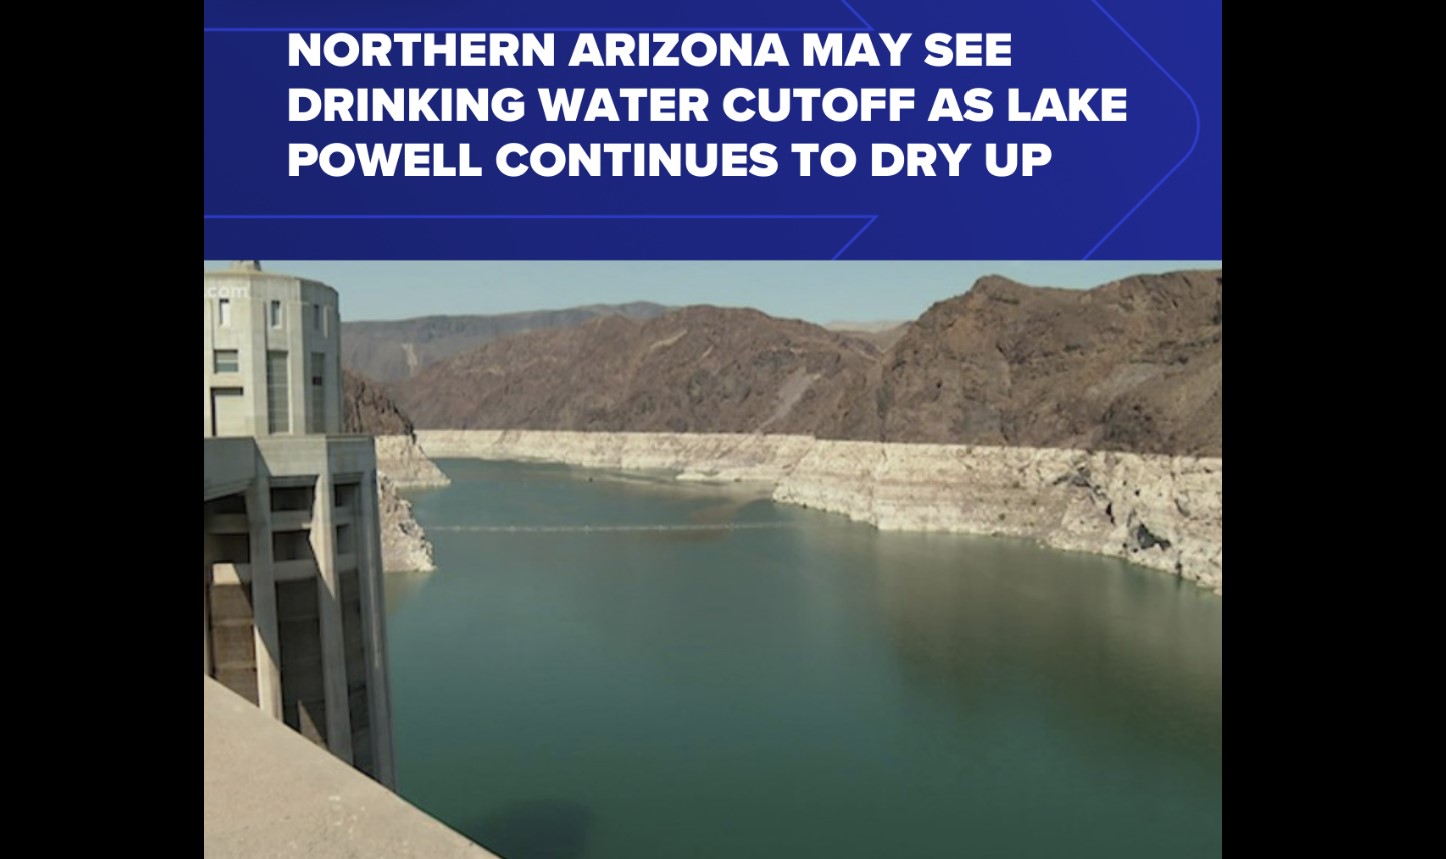 Водная война: в Северной Аризоне может произойти отключение питьевой воды, поскольку озеро Пауэлл продолжает высыхать